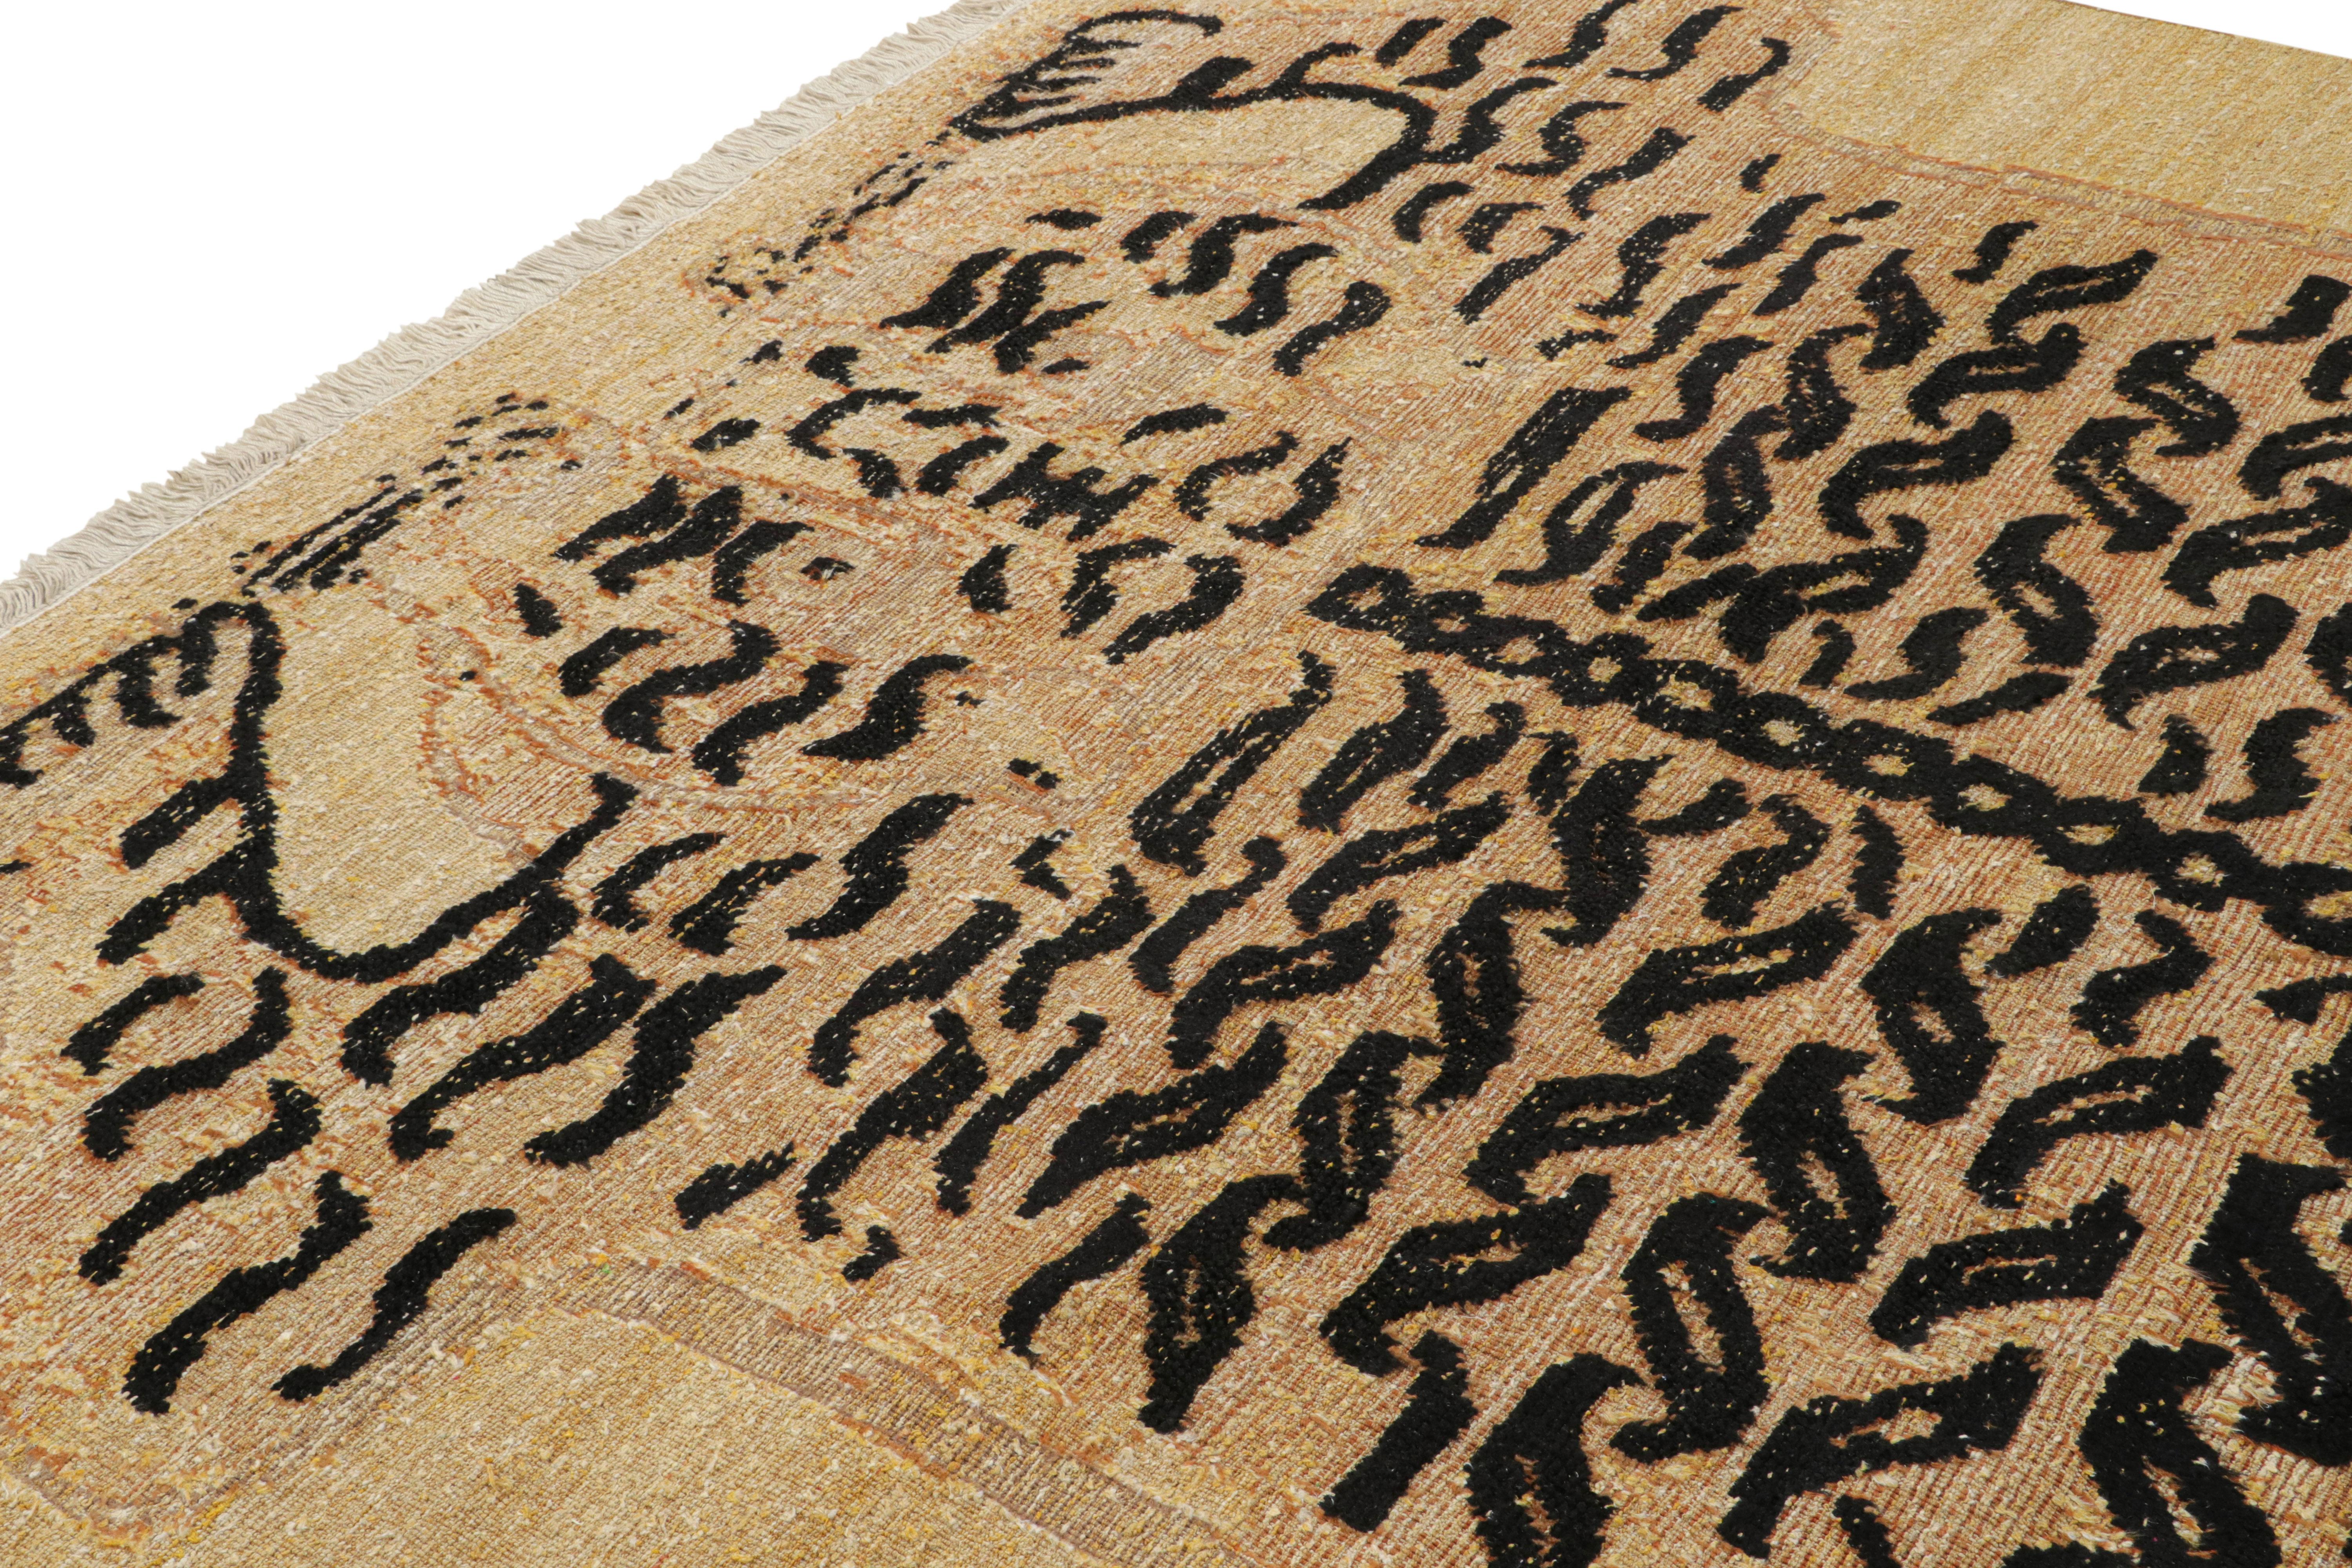 Handgeknüpfte Wolle, inspiriert von antiken orientalischen Tigerfellteppichen - insbesondere dieses 8x11 große Stück, das sich an chinesischen und tibetischen Darstellungen dieses Stils orientiert  

Über das Design: 

Aus unserer speziellen